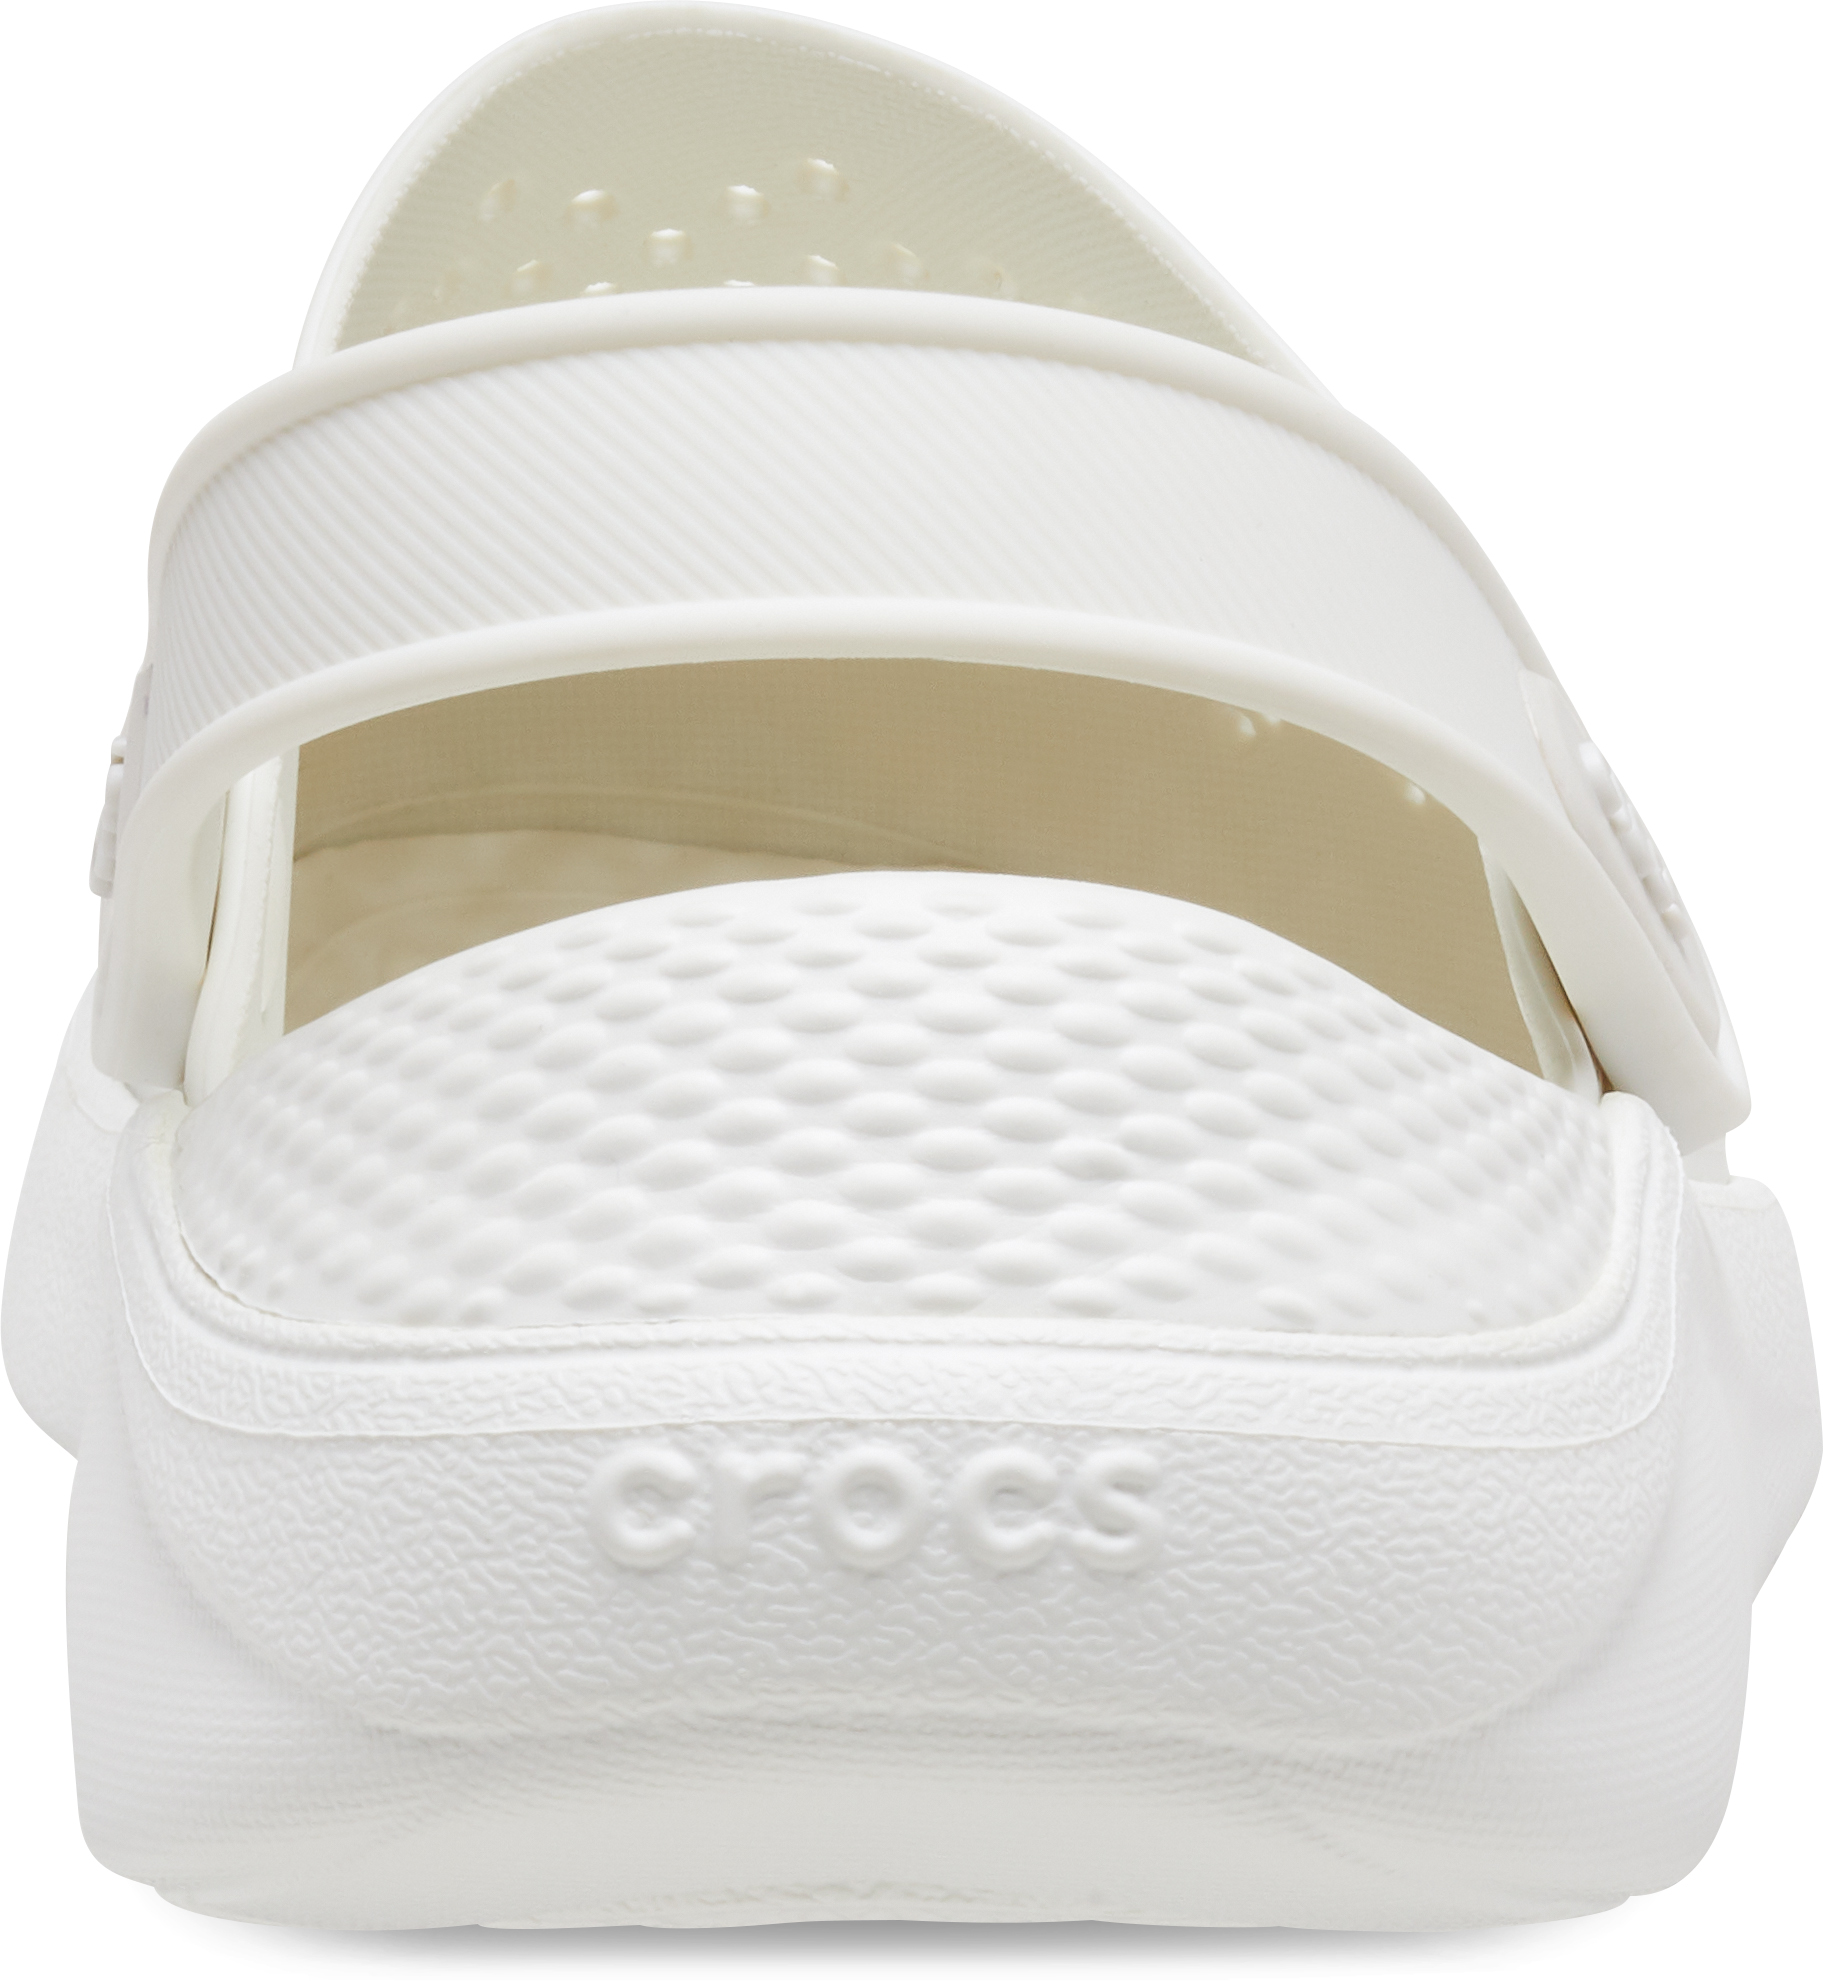 crocs Literide Clog Almost White/Almost White Croslite